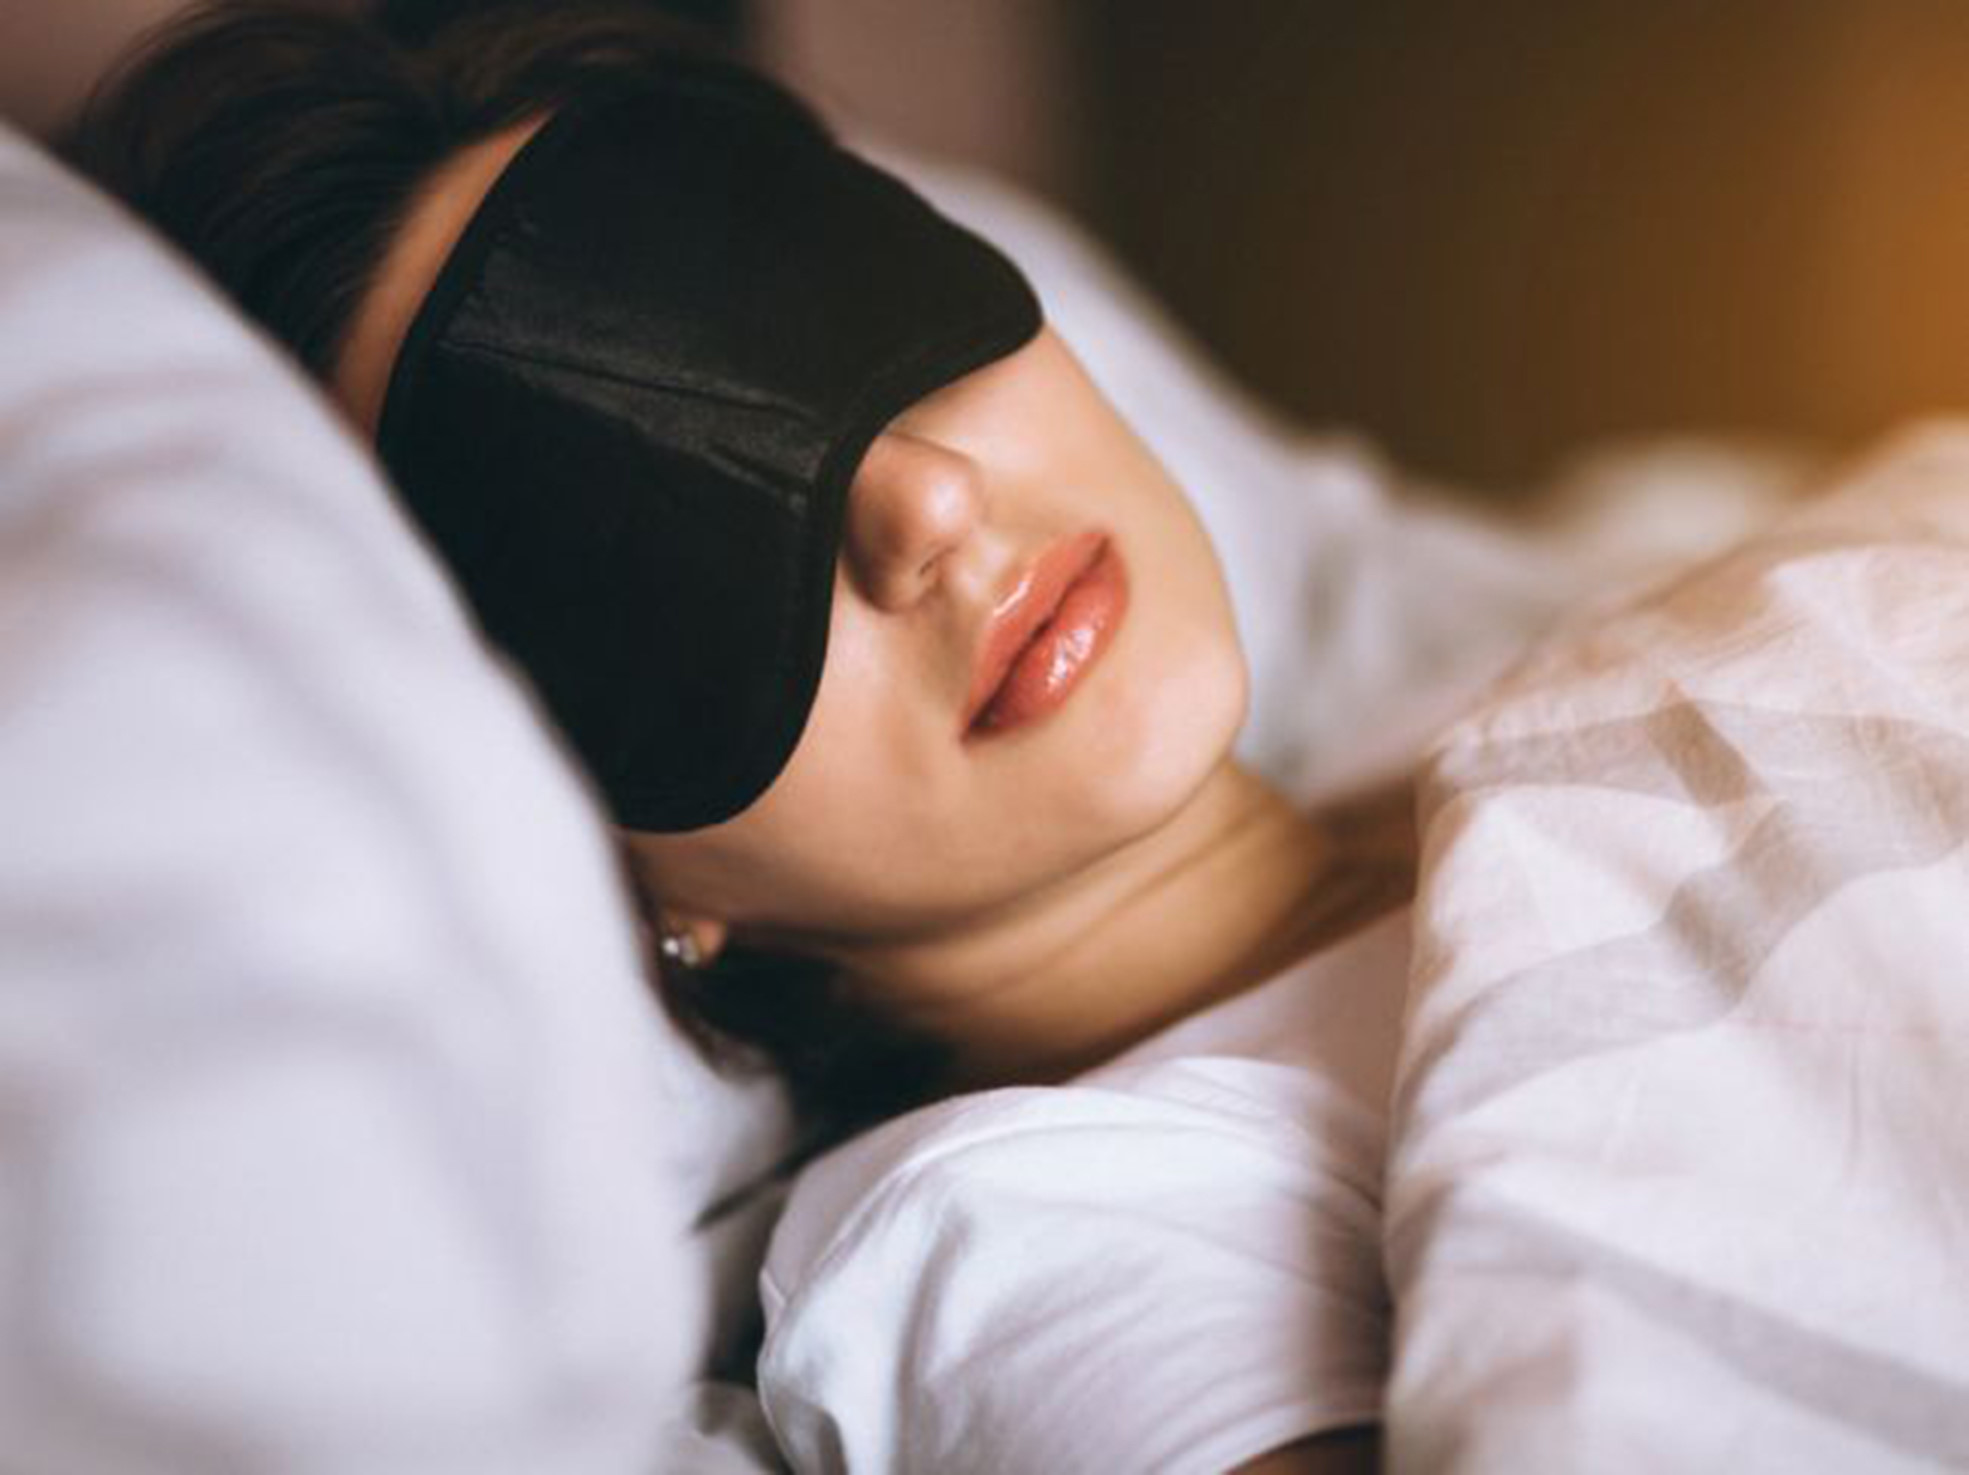   Hội chứng người đẹp ngủ có thể khiến bạn luôn luôn cảm thấy buồn ngủ (Ảnh minh họa)  